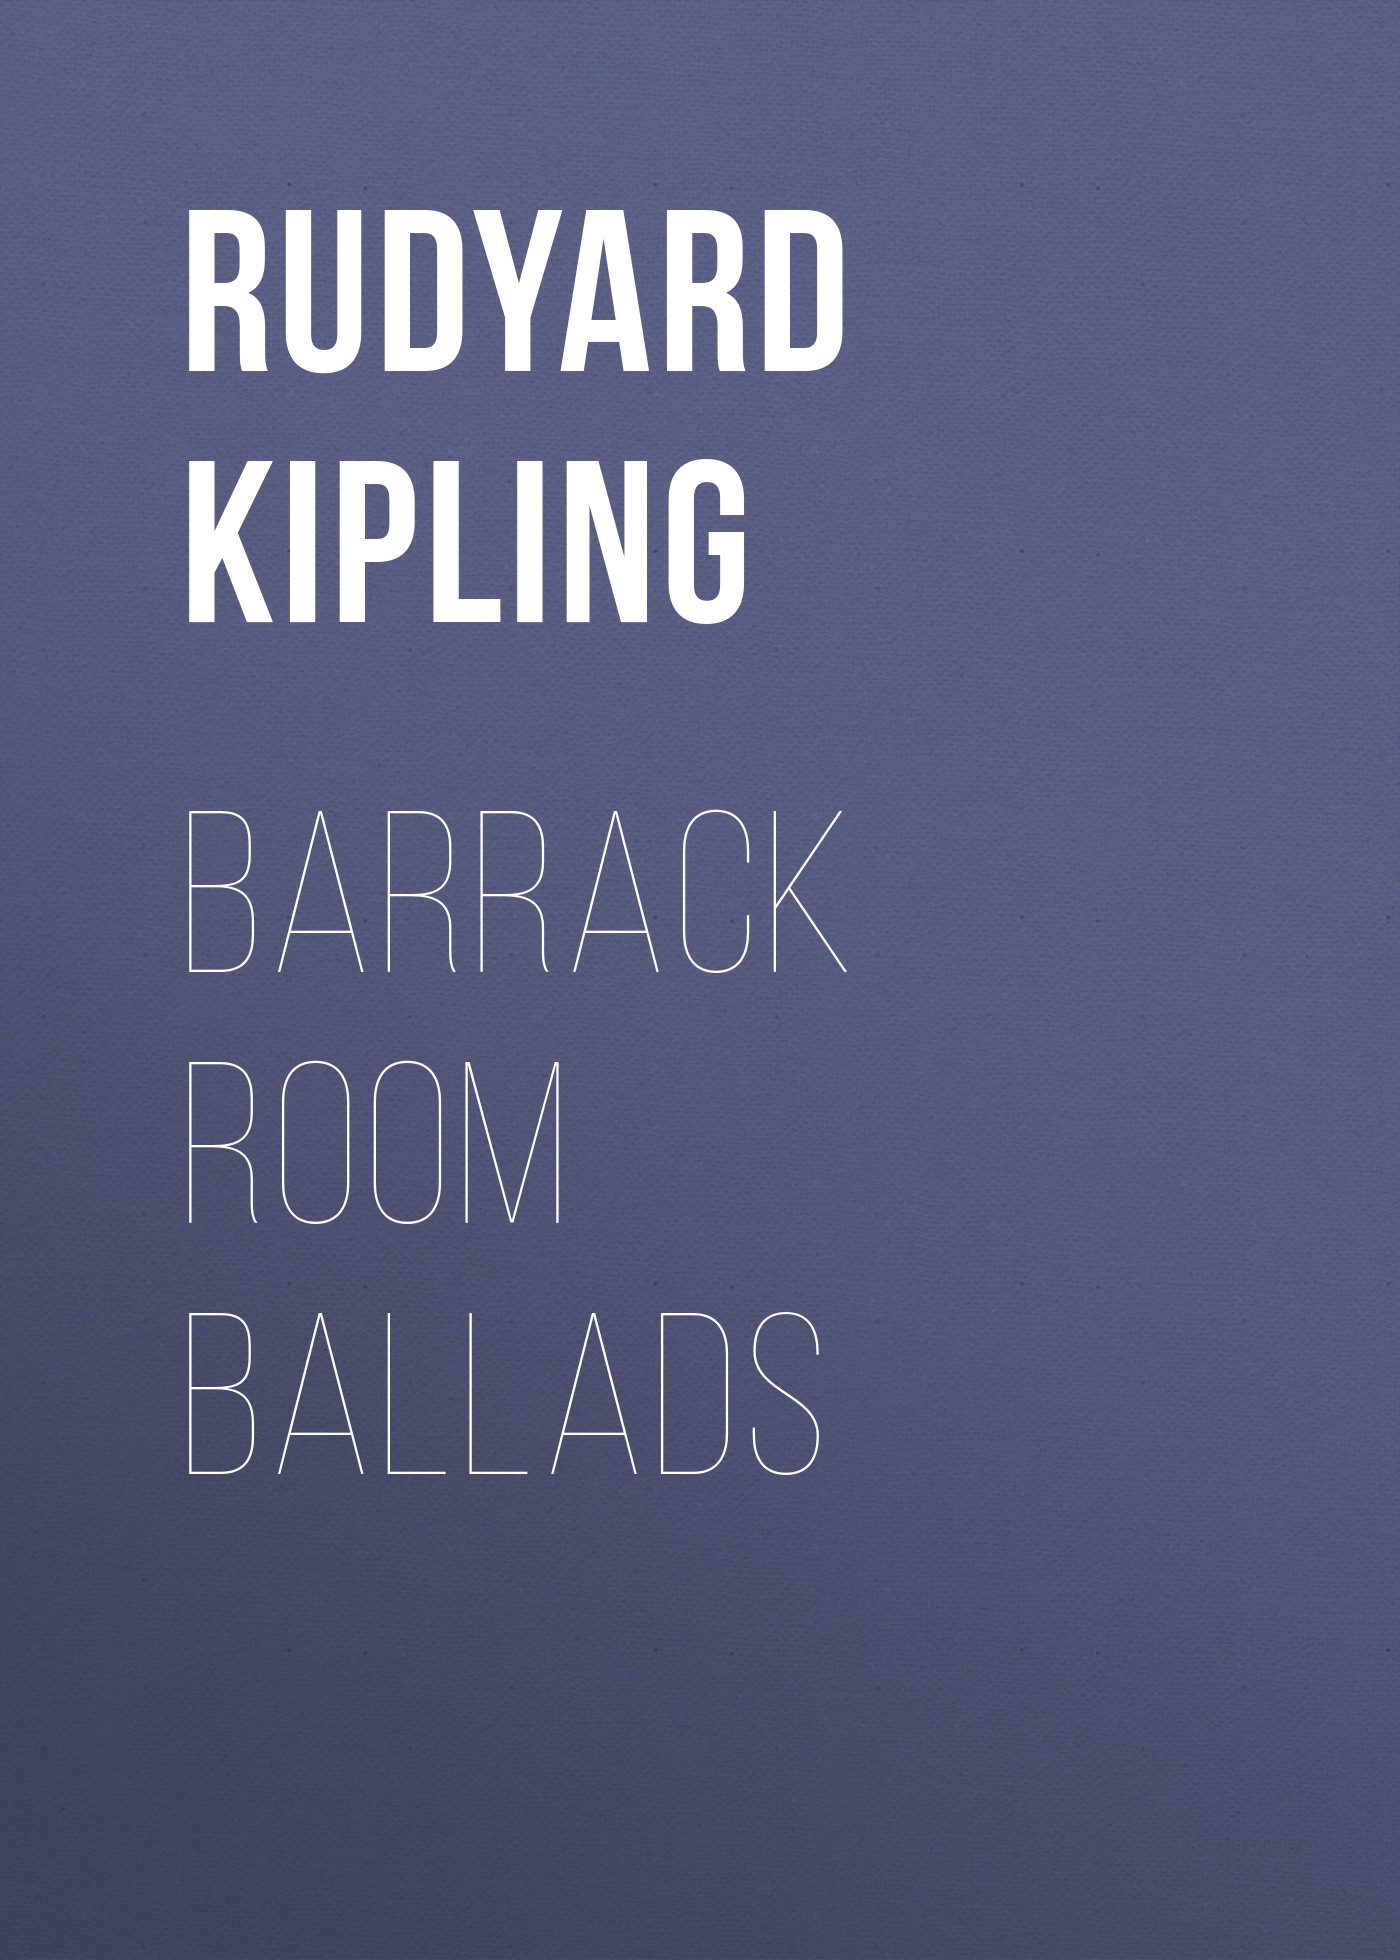 Книга Barrack Room Ballads из серии , созданная Rudyard Kipling, может относится к жанру Литература 19 века, Поэзия, Зарубежная старинная литература, Зарубежная классика. Стоимость электронной книги Barrack Room Ballads с идентификатором 25229404 составляет 0 руб.